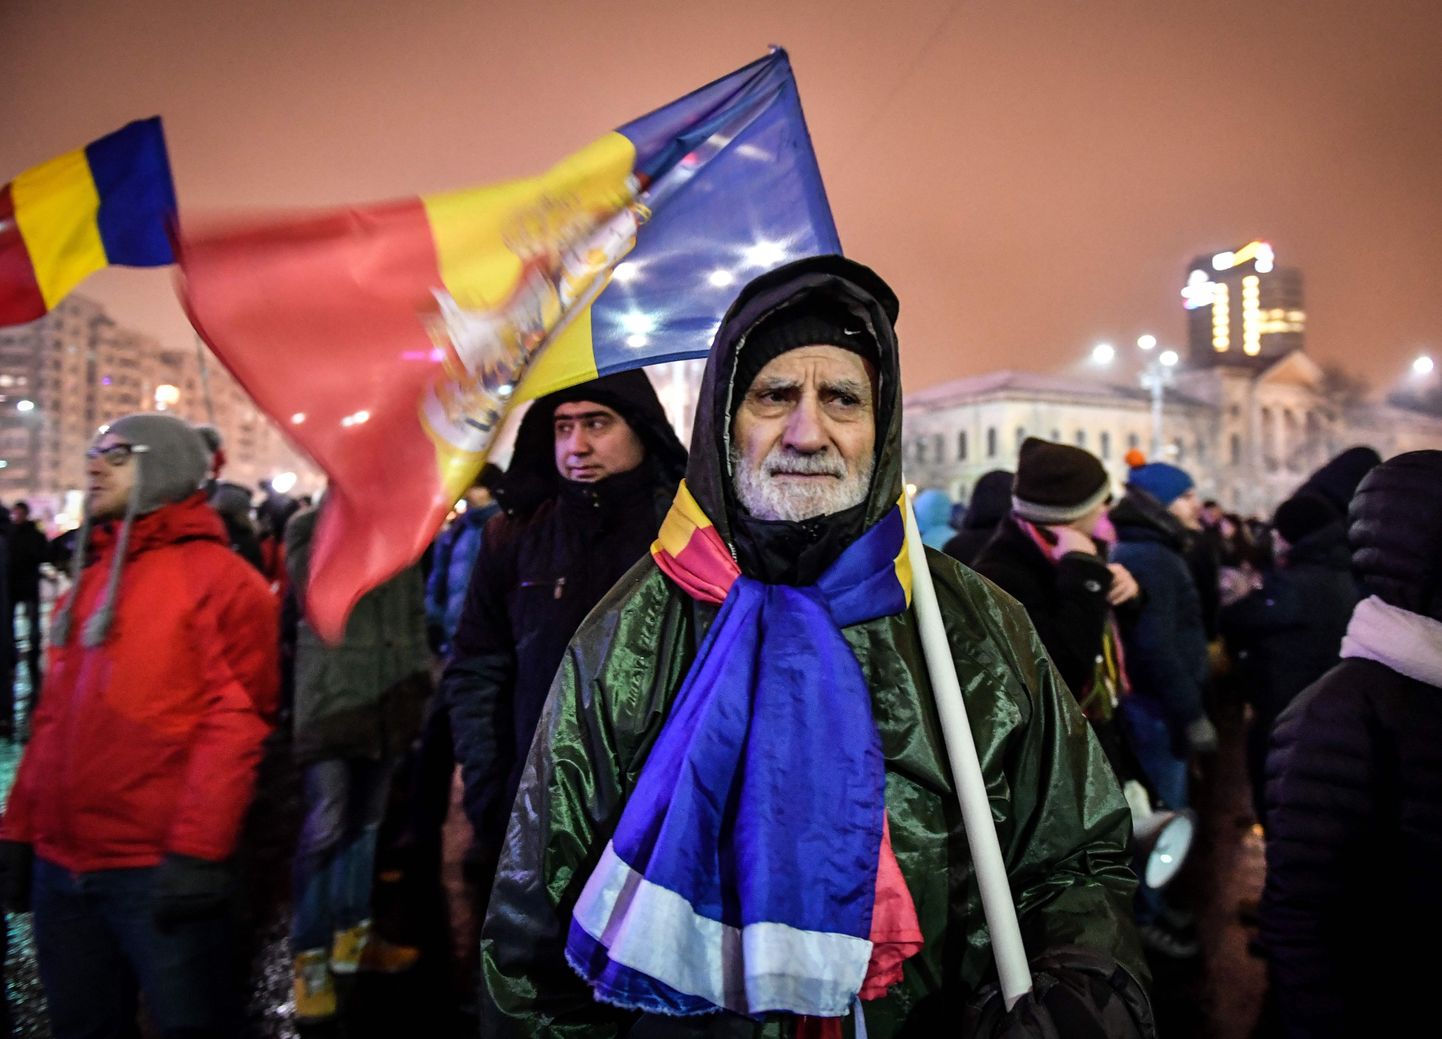 Rumeenia võimude seaduseelnõud, mis kriitikute hinnangul õõnestavad kohtusüsteemi sõltumatust ja teevad keerulisemaks korruptsiooni väljajuurimise, on kutsunud riigis esile proteste. Pildil inimesed meeleavaldusel Bukarestis valitsuse tööpaiga ees veebruaris.